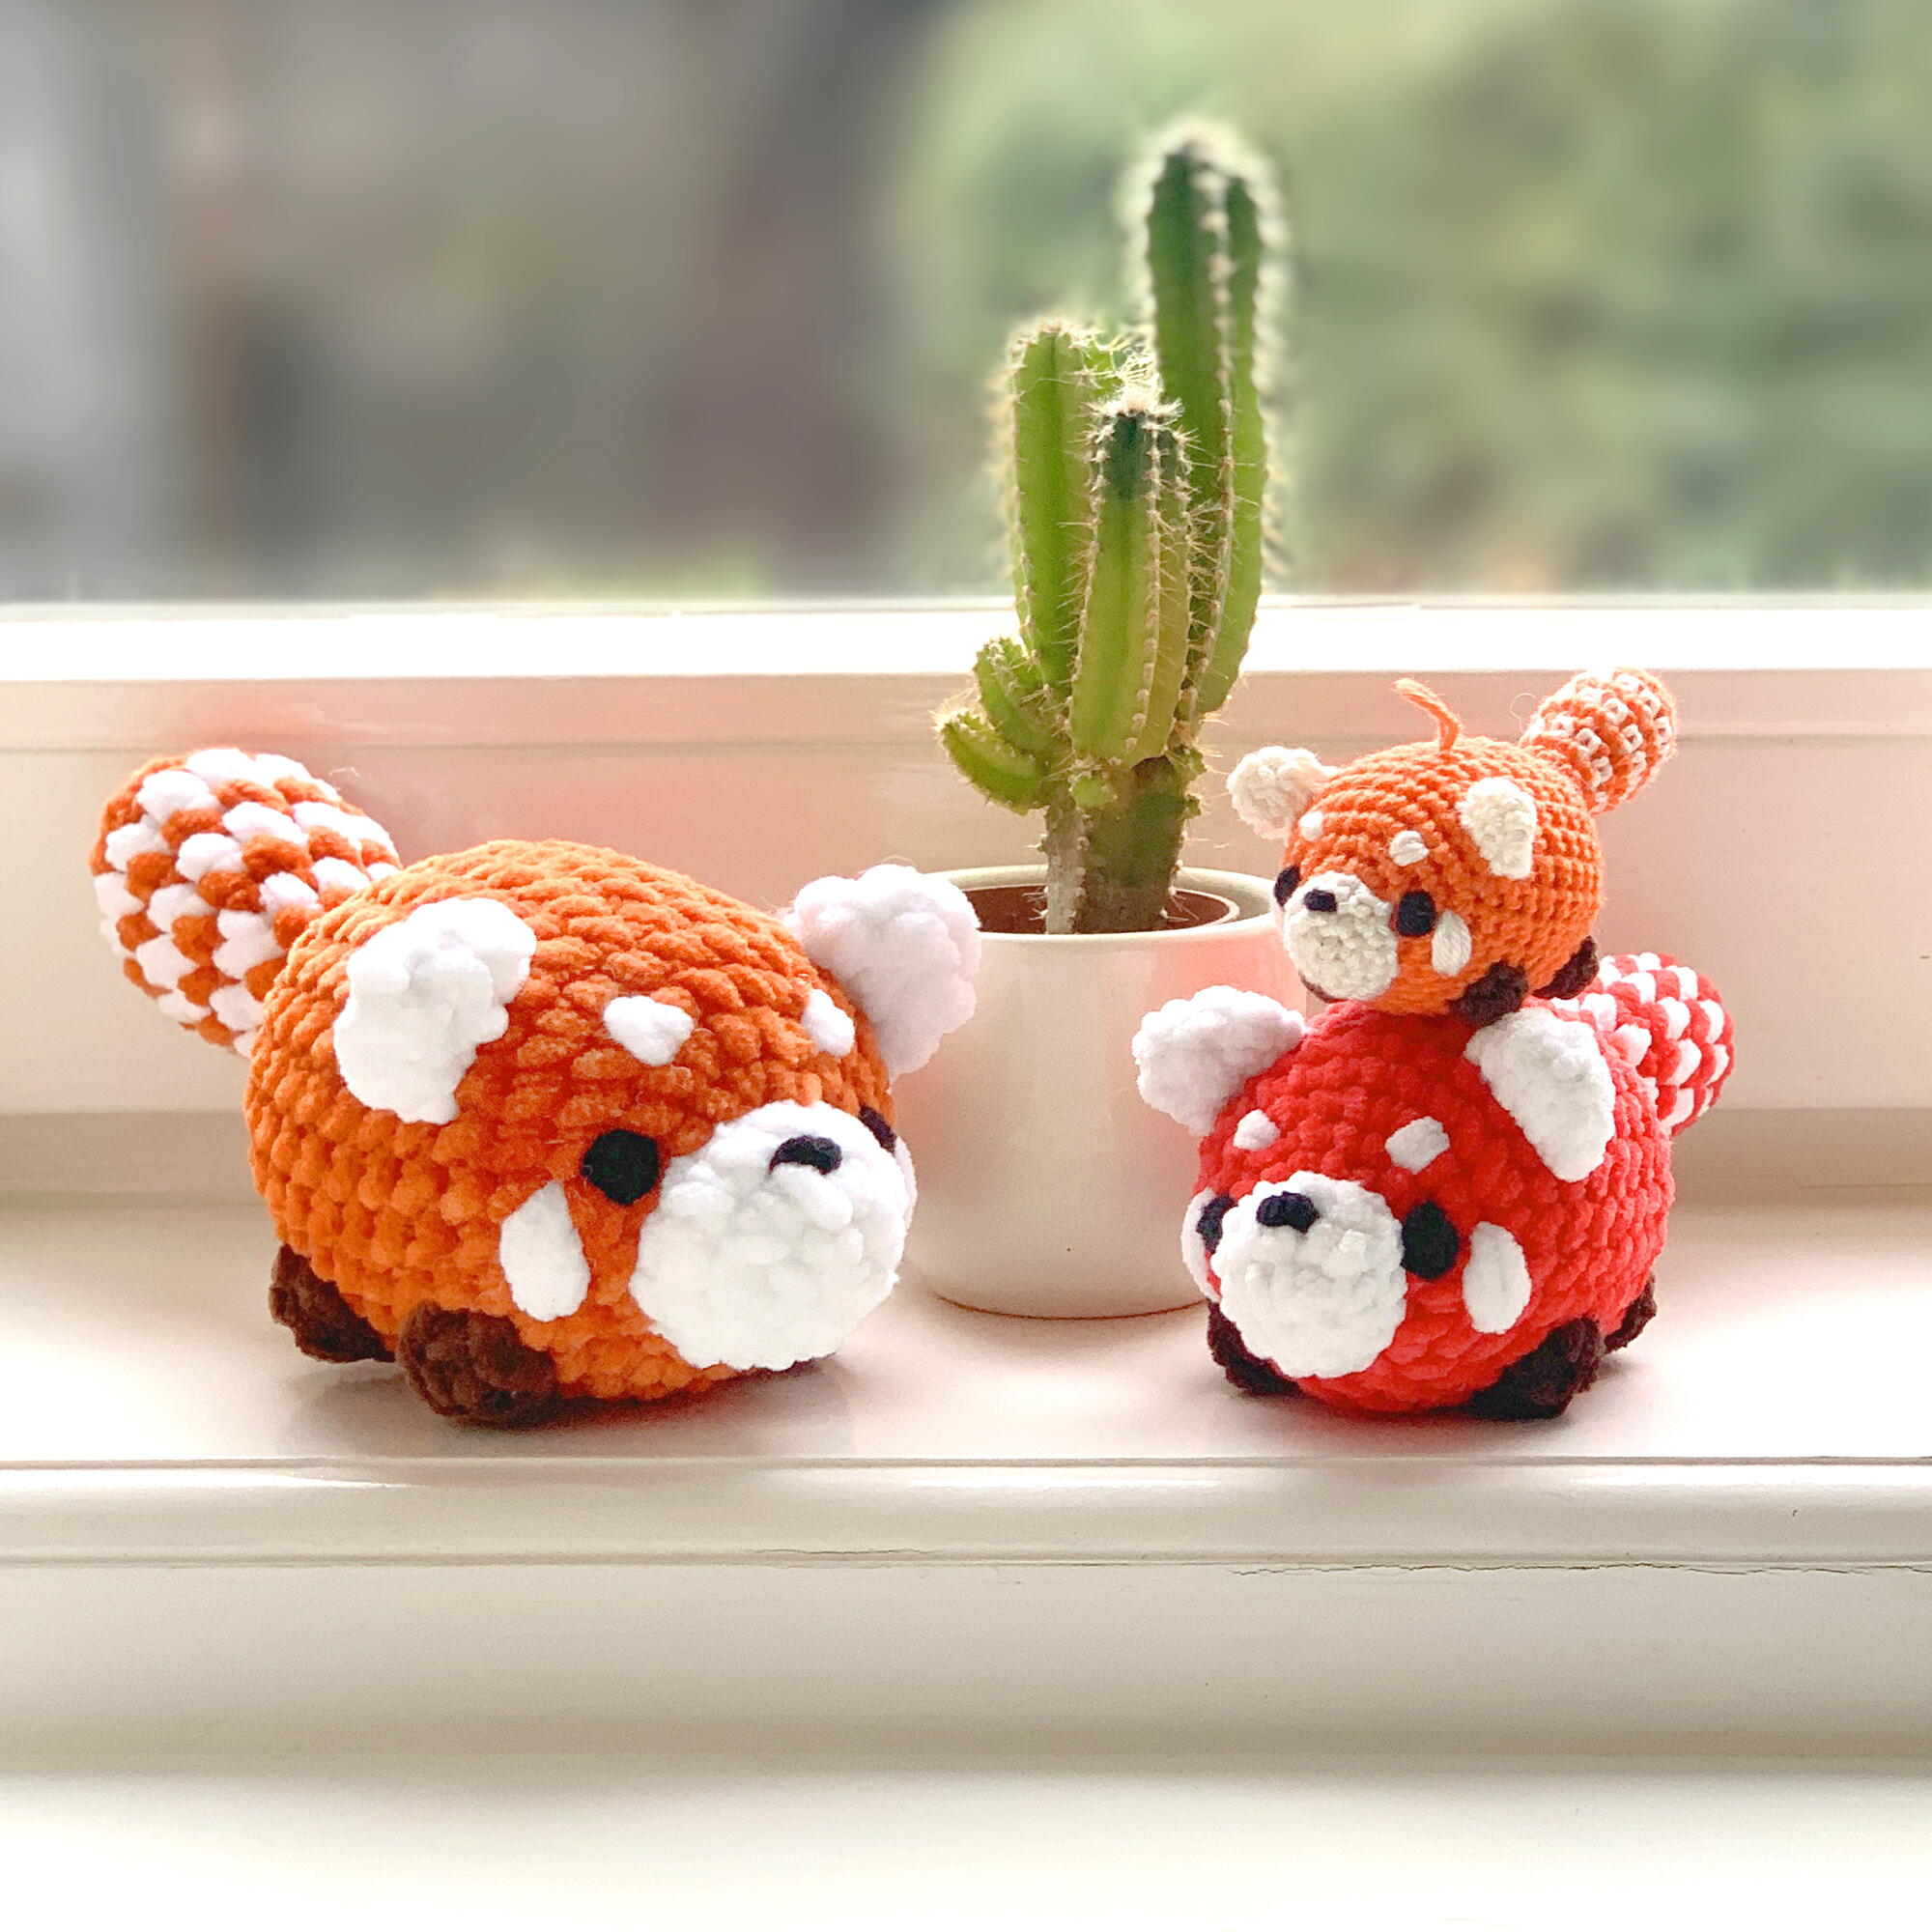 Red Panda Amigurumi Crochet Pattern AllFreeCrochet.com